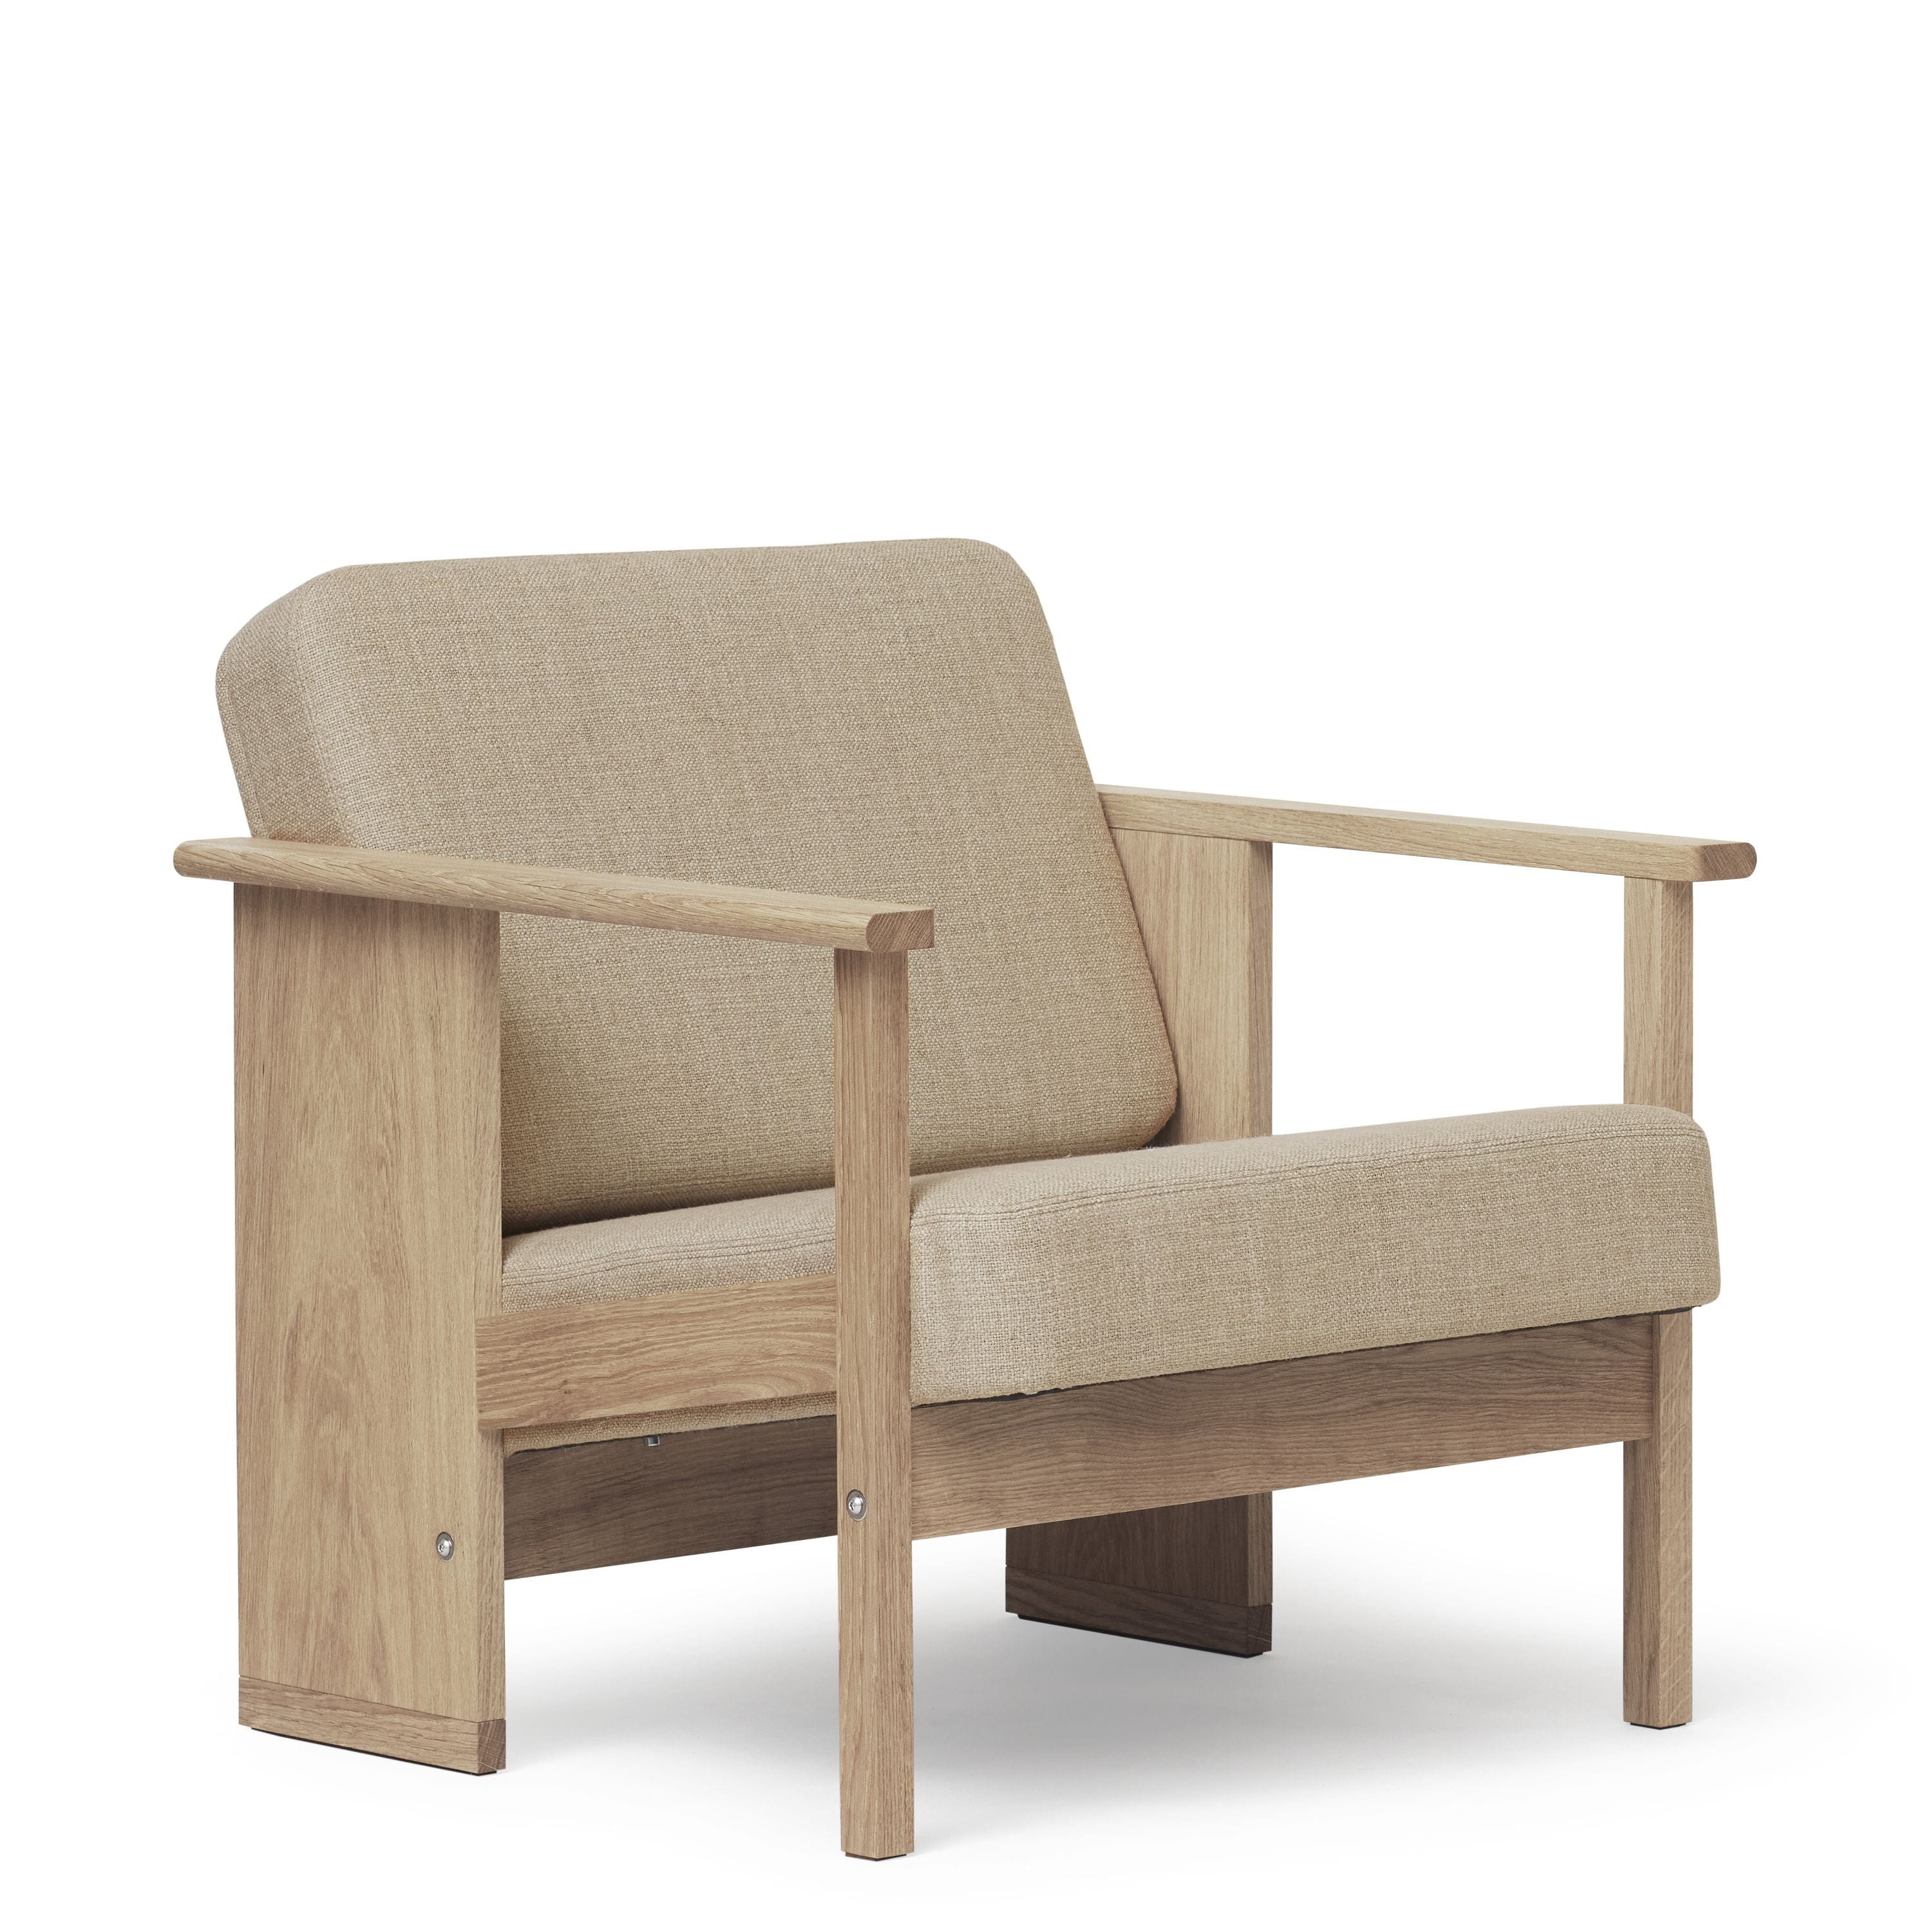 Form & Refine Block Lounge Chair. Weißöl Eiche